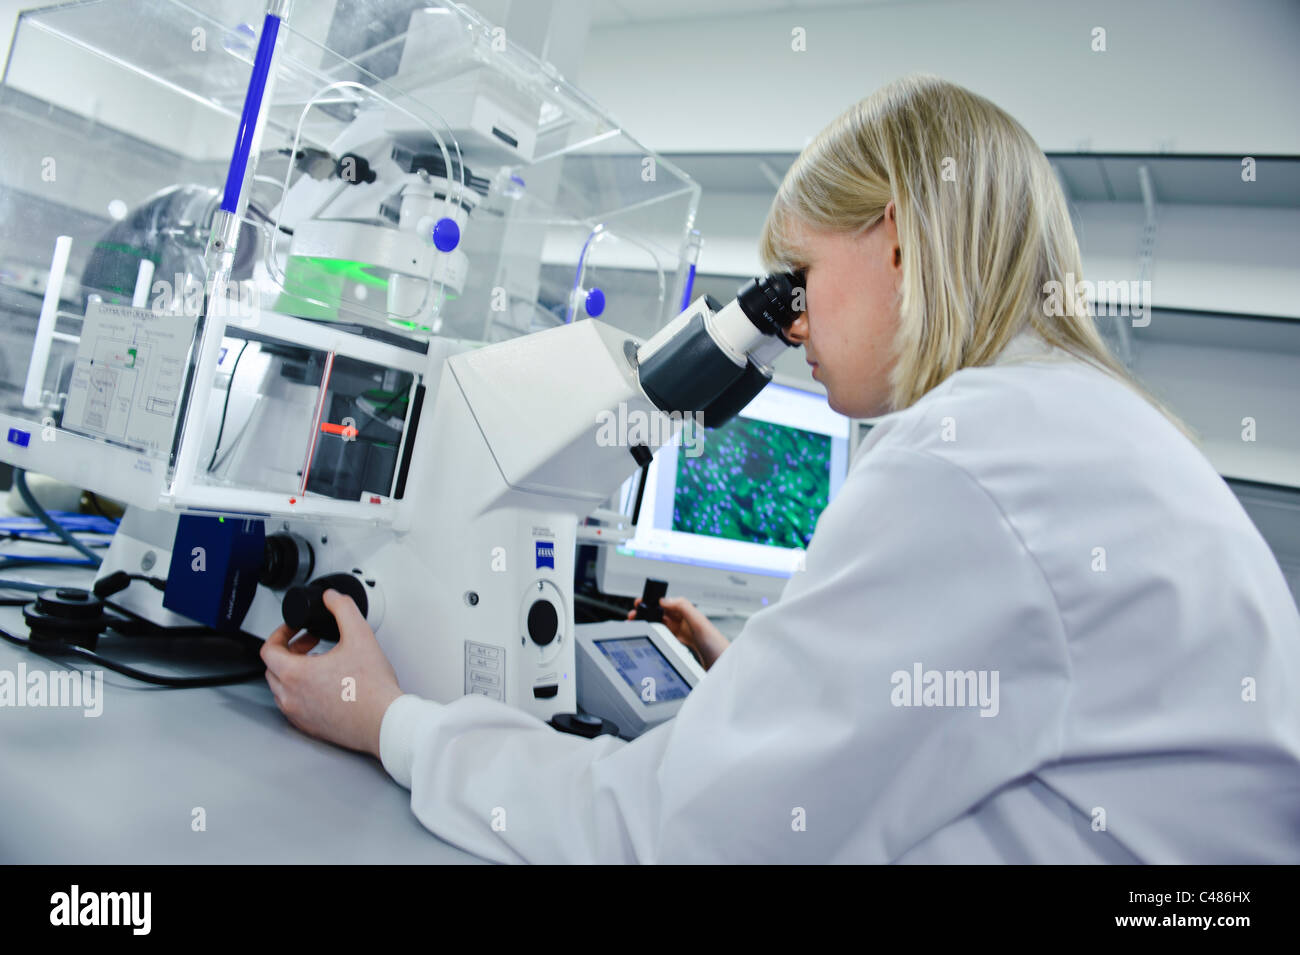 Jeune blonde female scientist sarrau blanc puissant microscope dans un laboratoire de sciences bien éclairée sur l'écran de l'ordinateur des images de cellules Banque D'Images